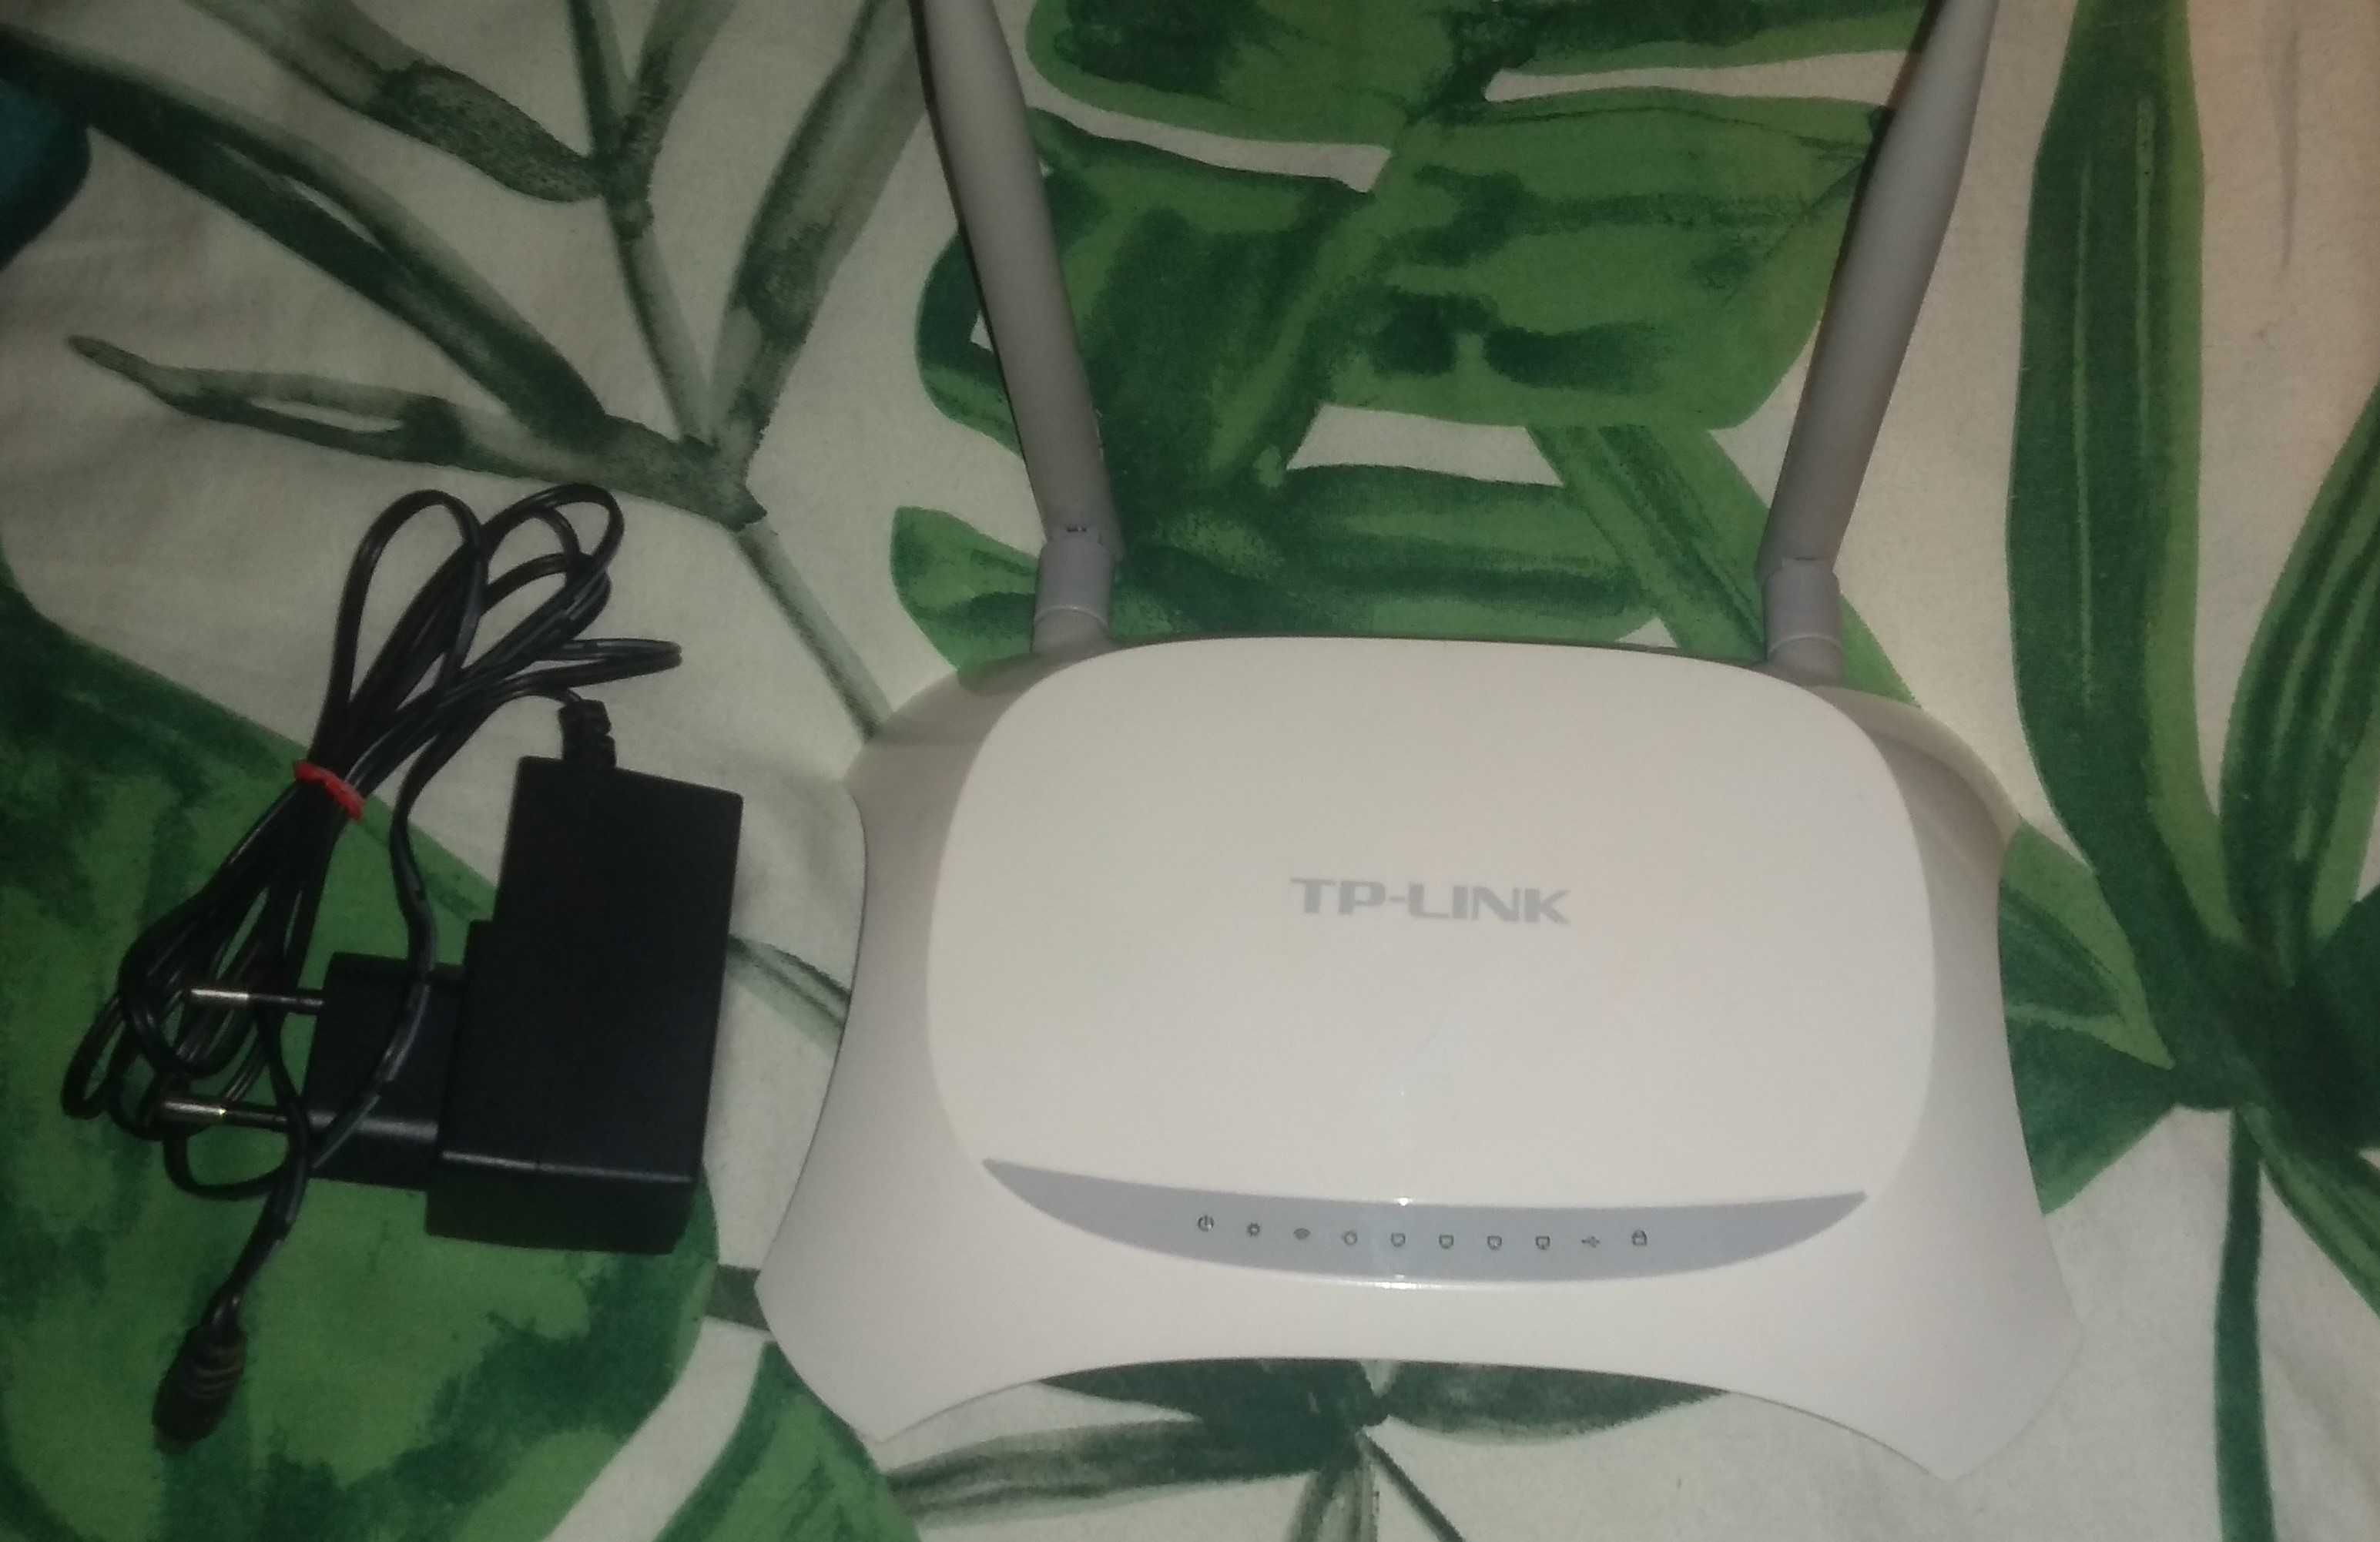 Router TP-Link TL-MR3420